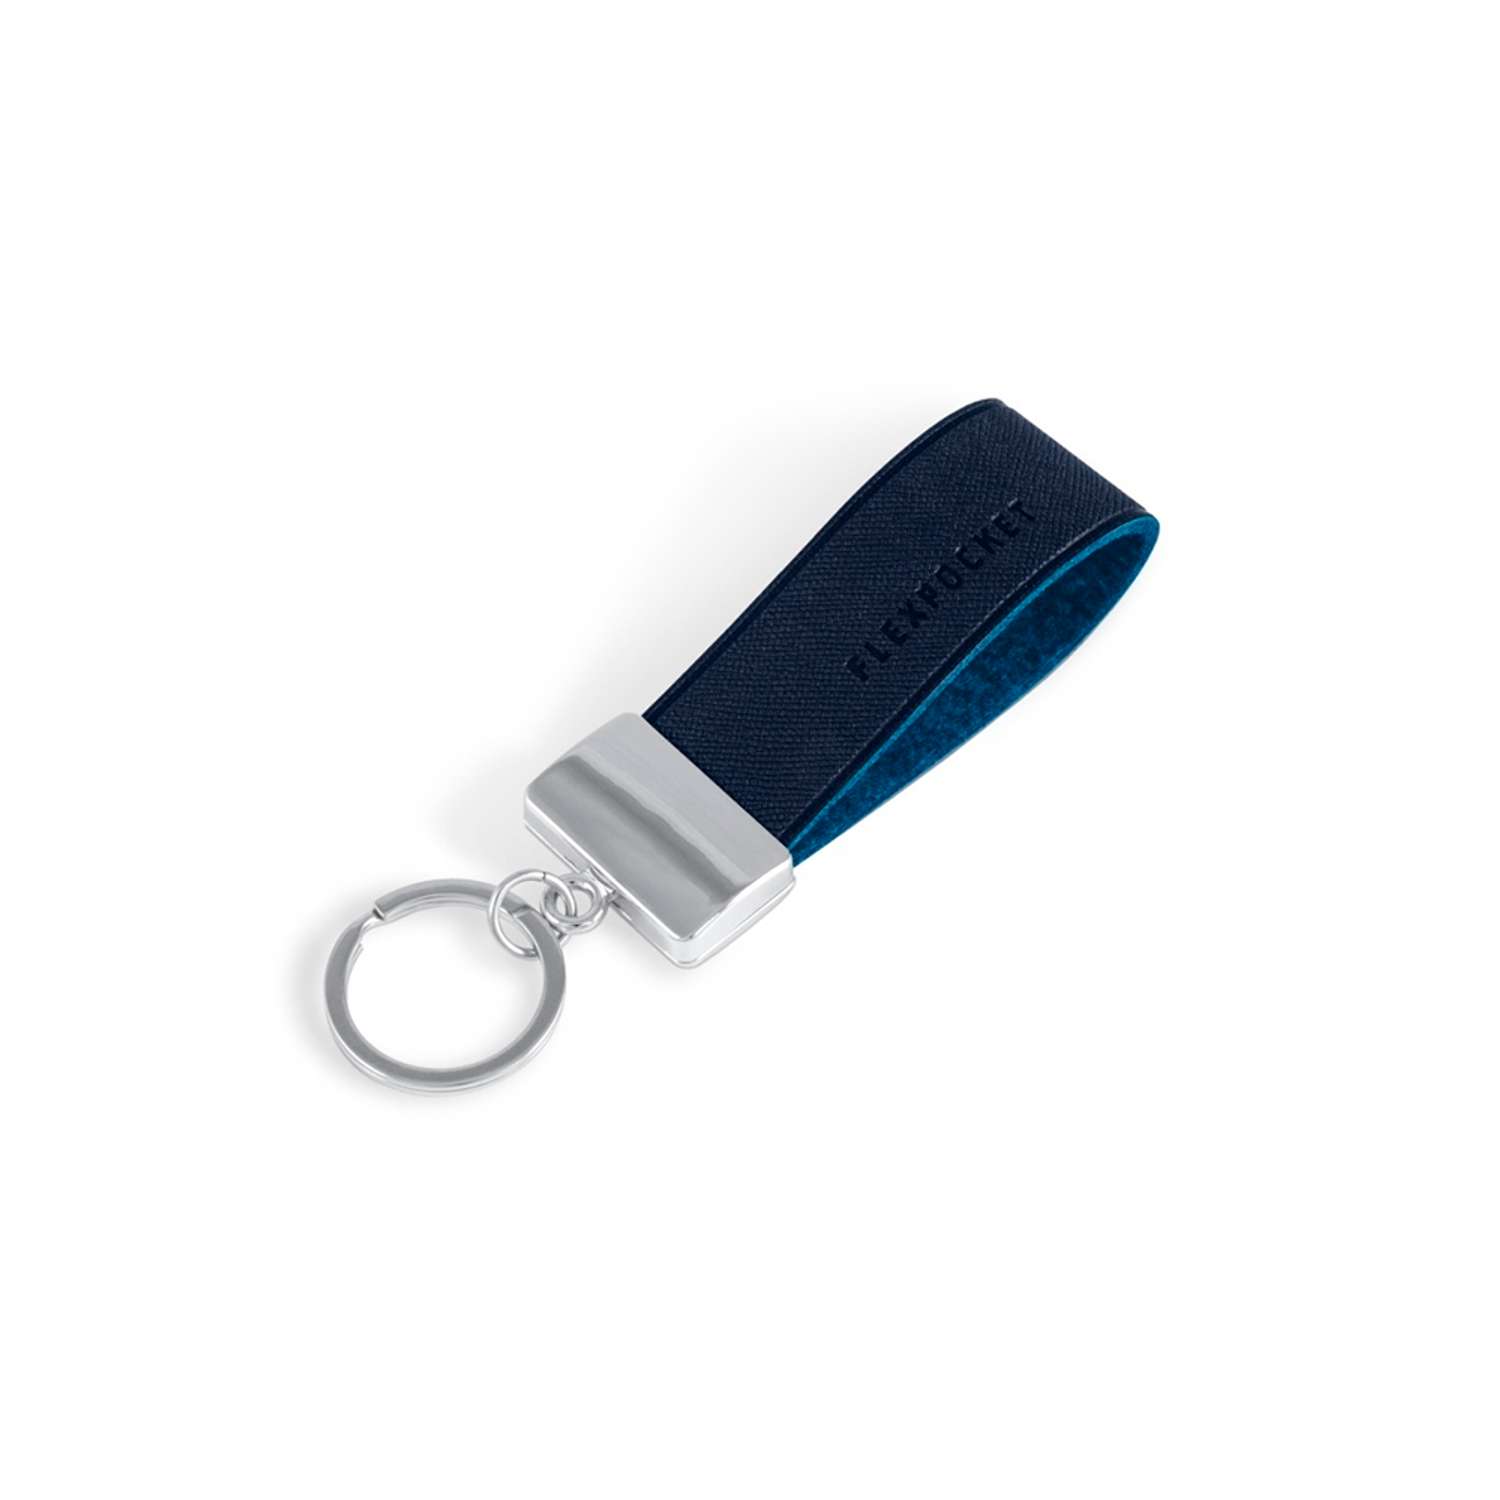 Брелок Flexpocket темно-синего цвета для ключей или на сумку - фото 1